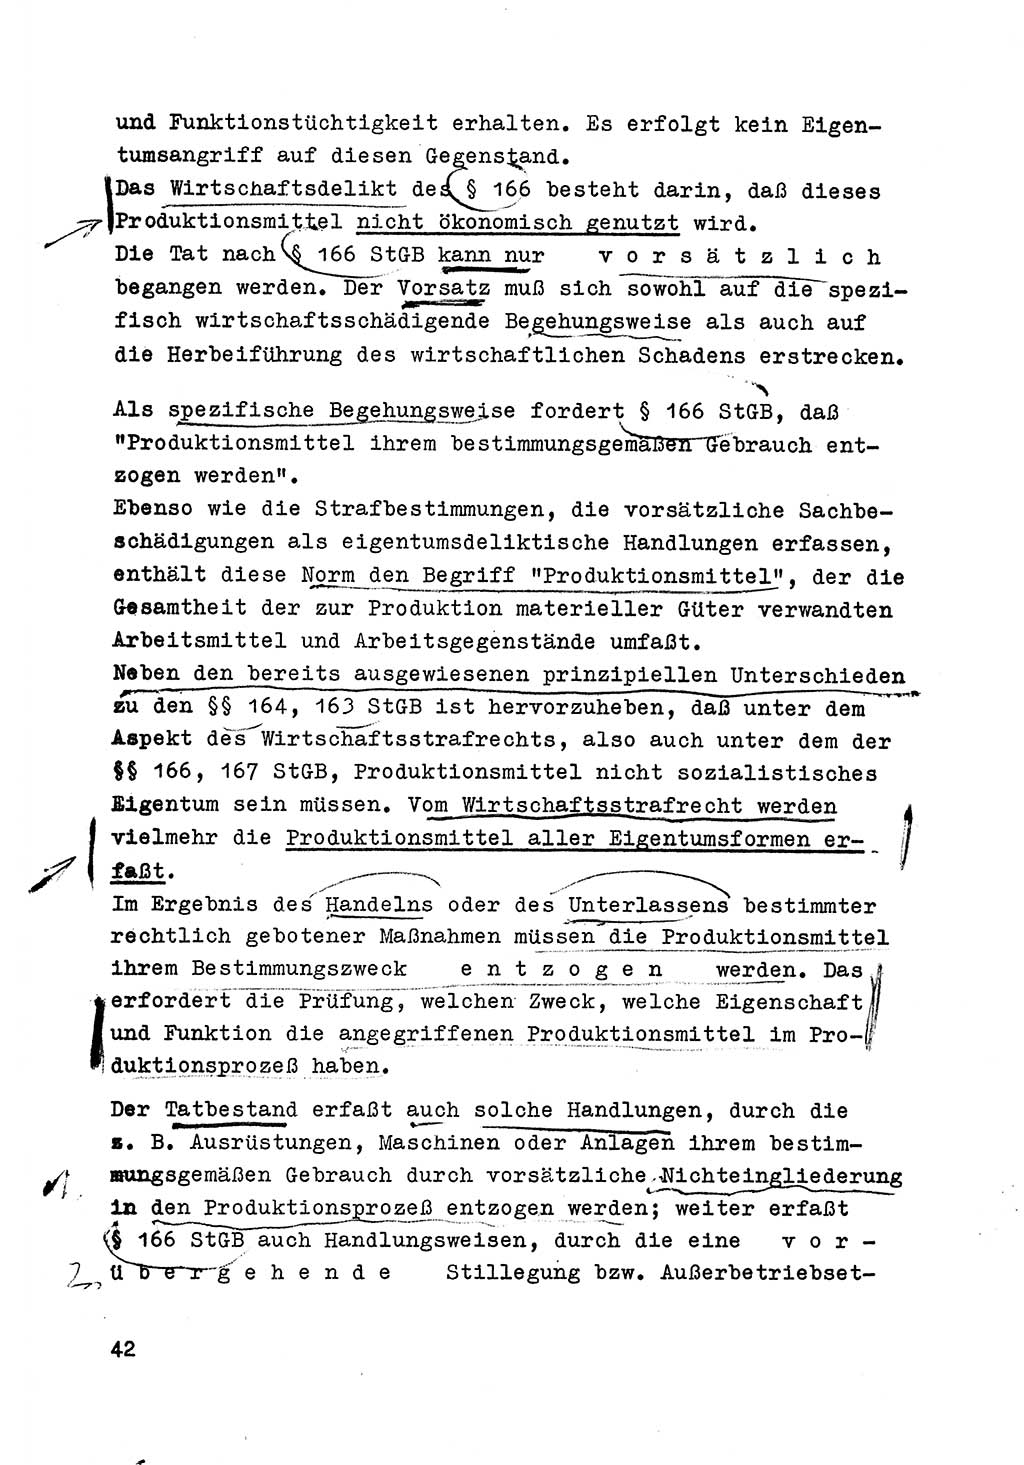 Strafrecht der DDR (Deutsche Demokratische Republik), Besonderer Teil, Lehrmaterial, Heft 6 1970, Seite 42 (Strafr. DDR BT Lehrmat. H. 6 1970, S. 42)